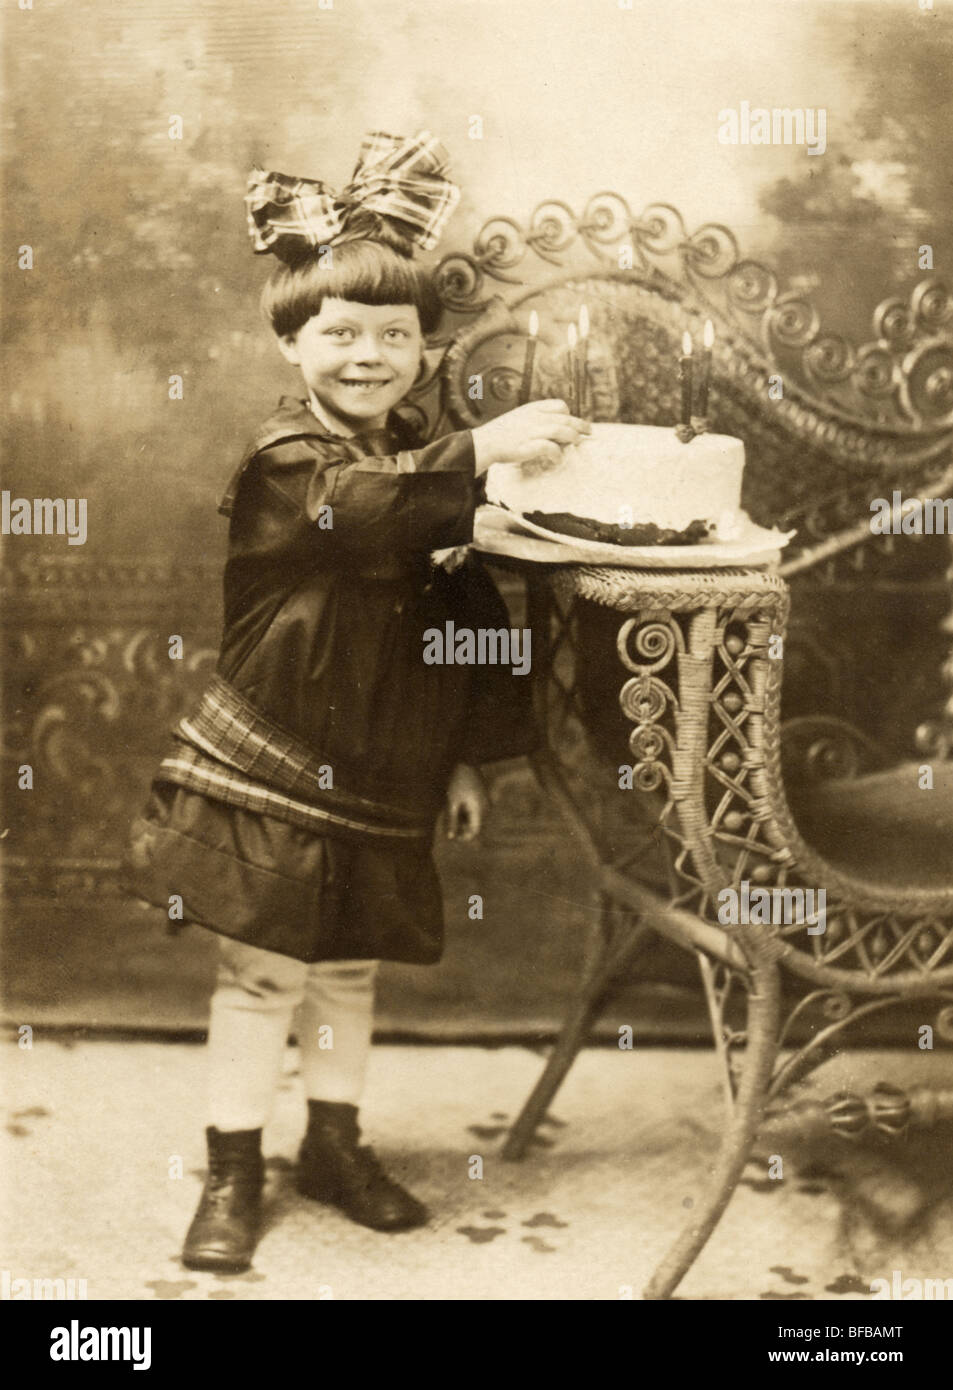 Bambina di cinque anni con la torta di compleanno Foto Stock